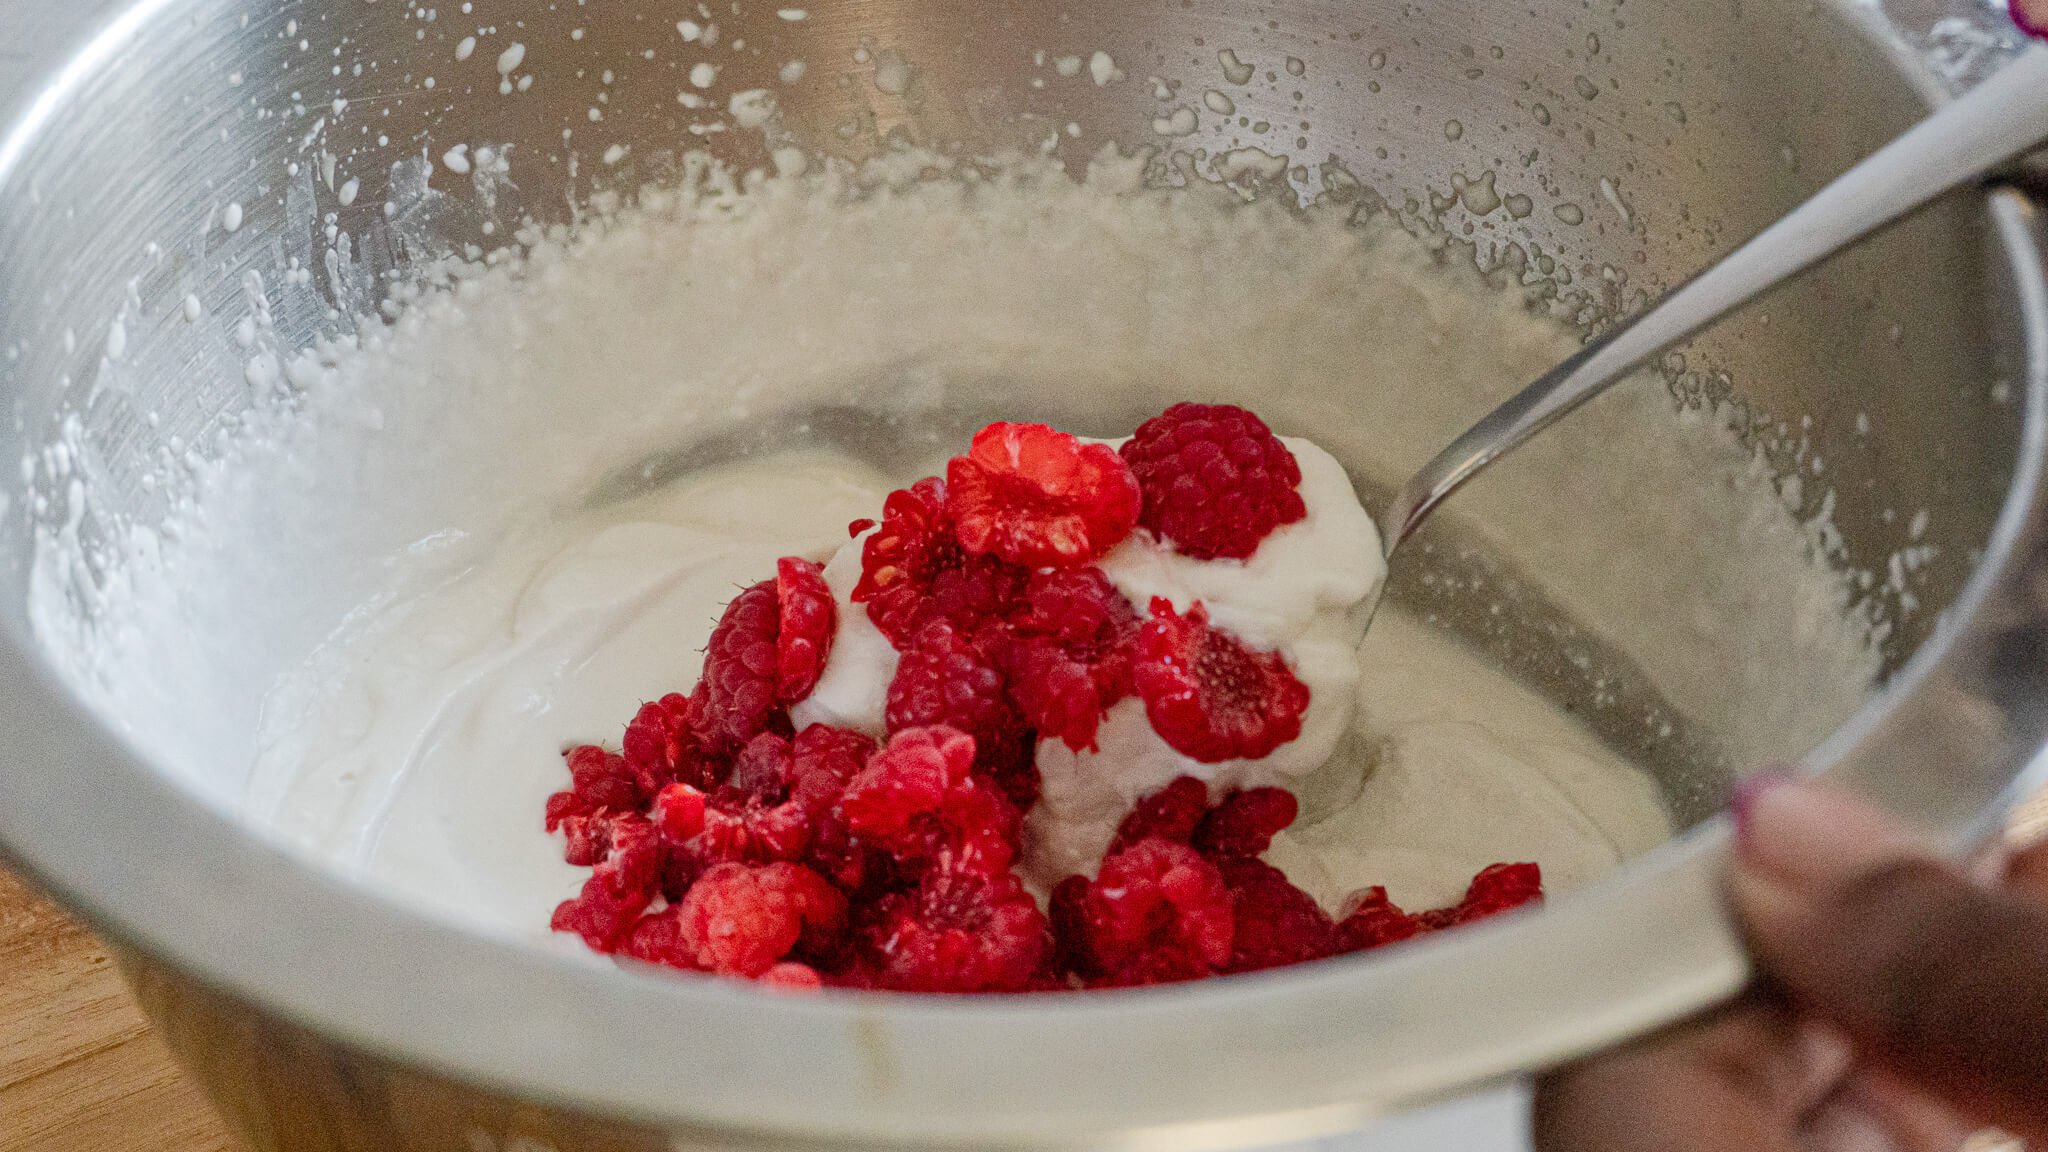 mixing raspberries in non-dairy coconut milk